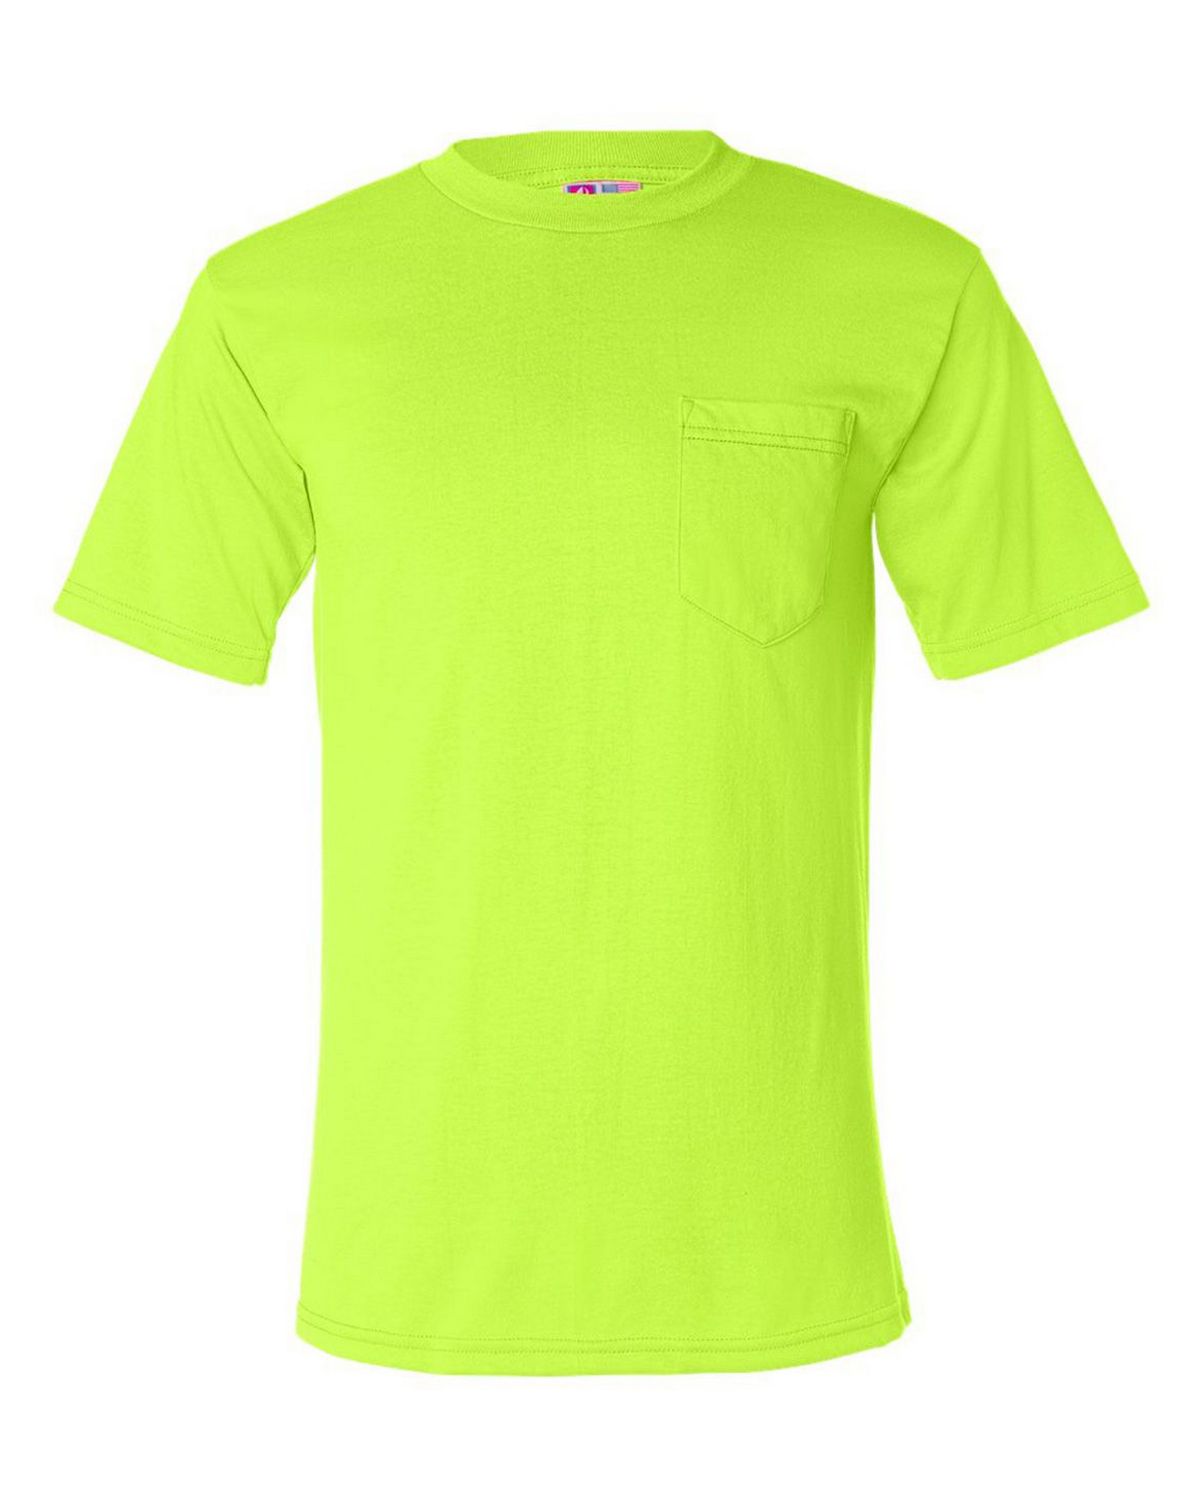 Bayside 1725 50/50 Pocket T shirt - Shop at ApparelnBags.com